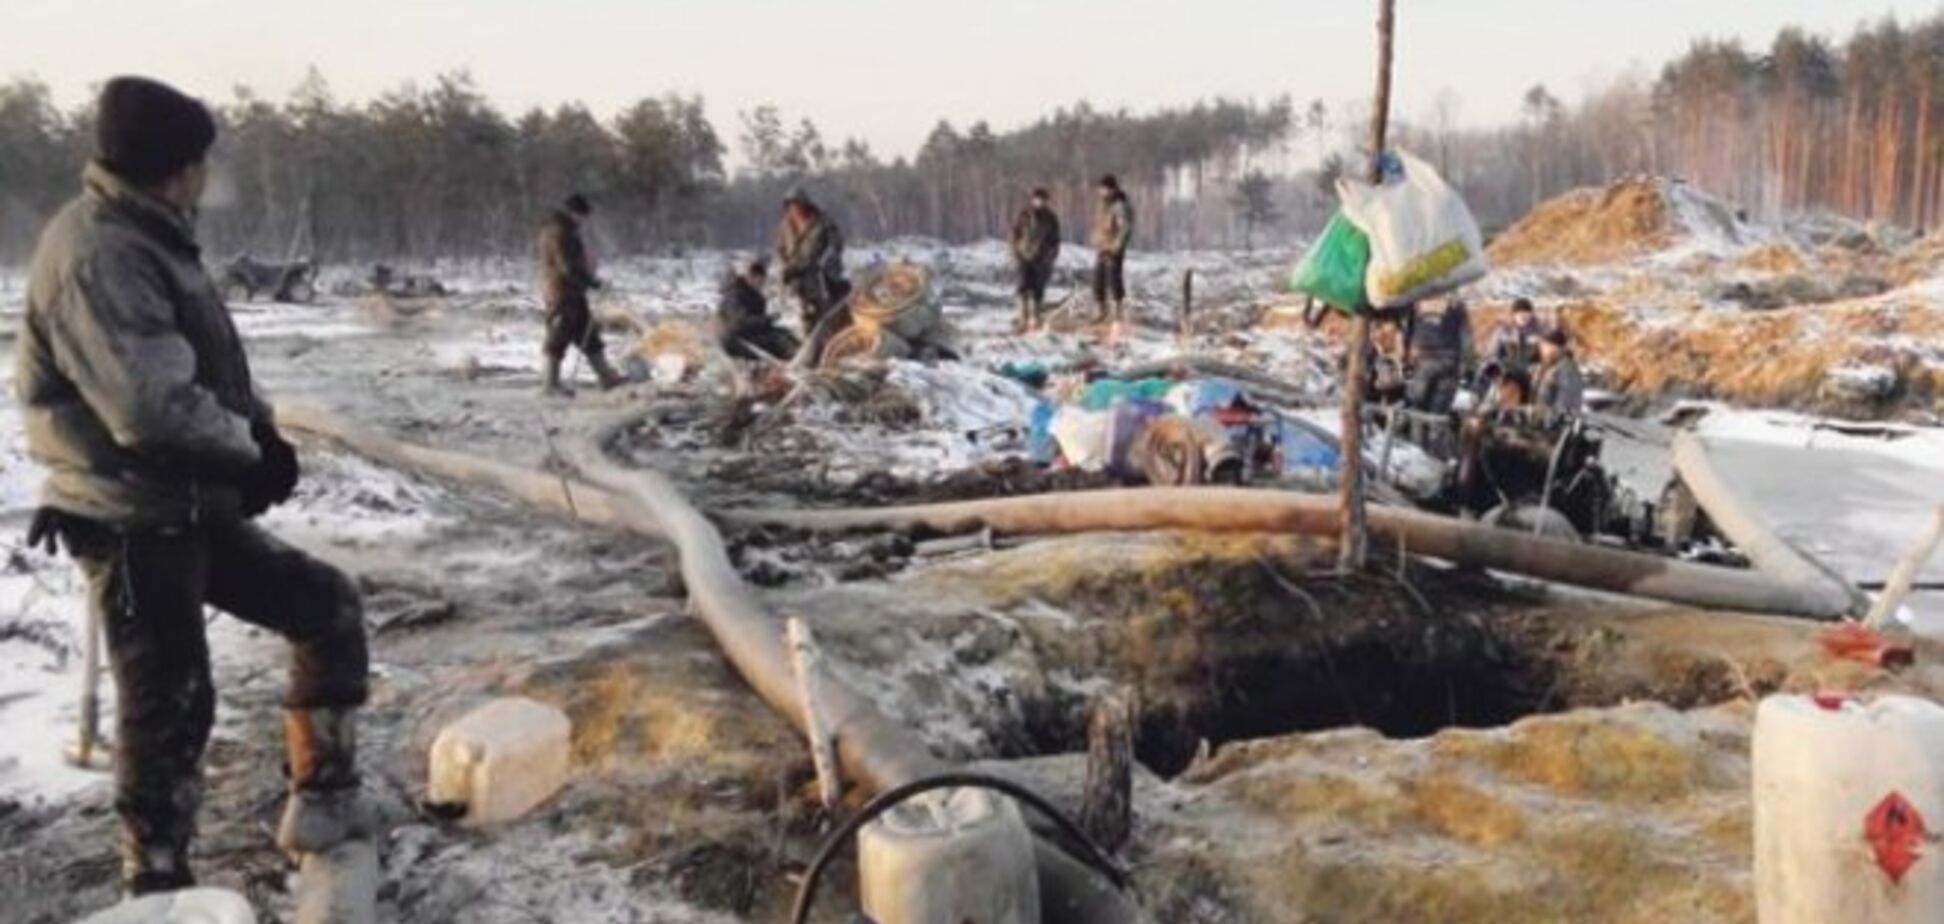 'Янтарная война' в Житомирской области: бандиты открыто вывозят тонны янтаря и устанавливают на дорогах блокпосты